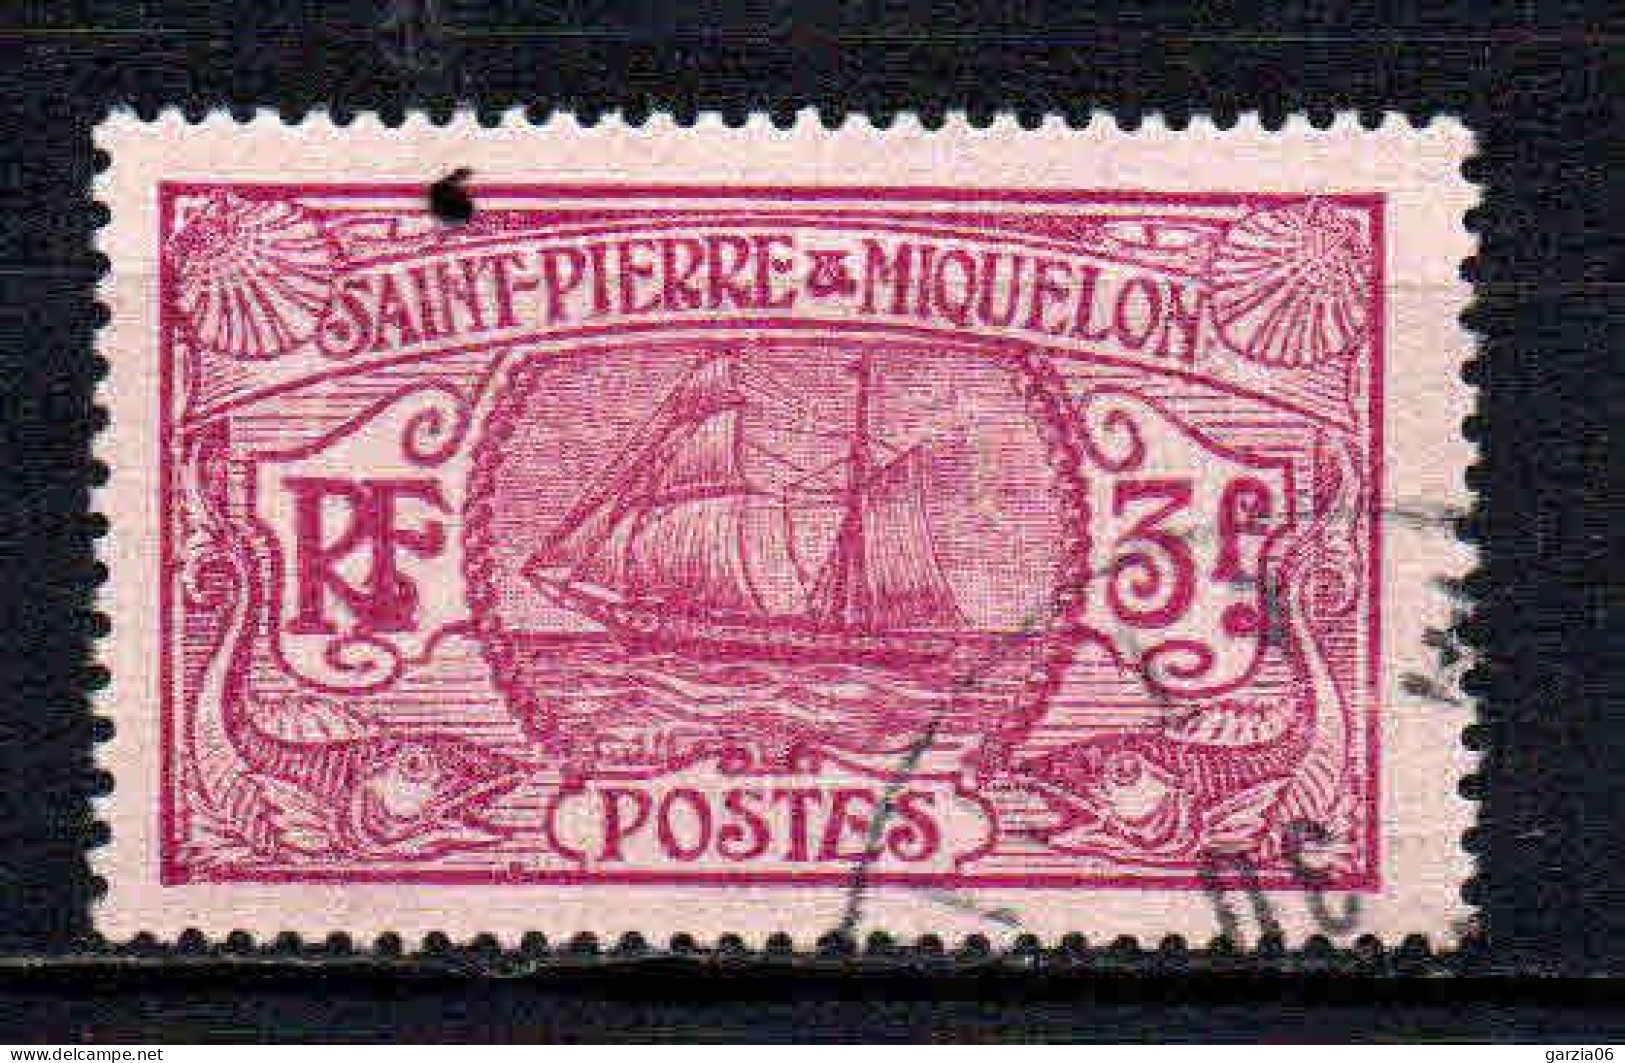 St Pierre Et Miquelon    - 1930 - Bateau De Pêche   - N° 131  - Oblit - Used - Usati